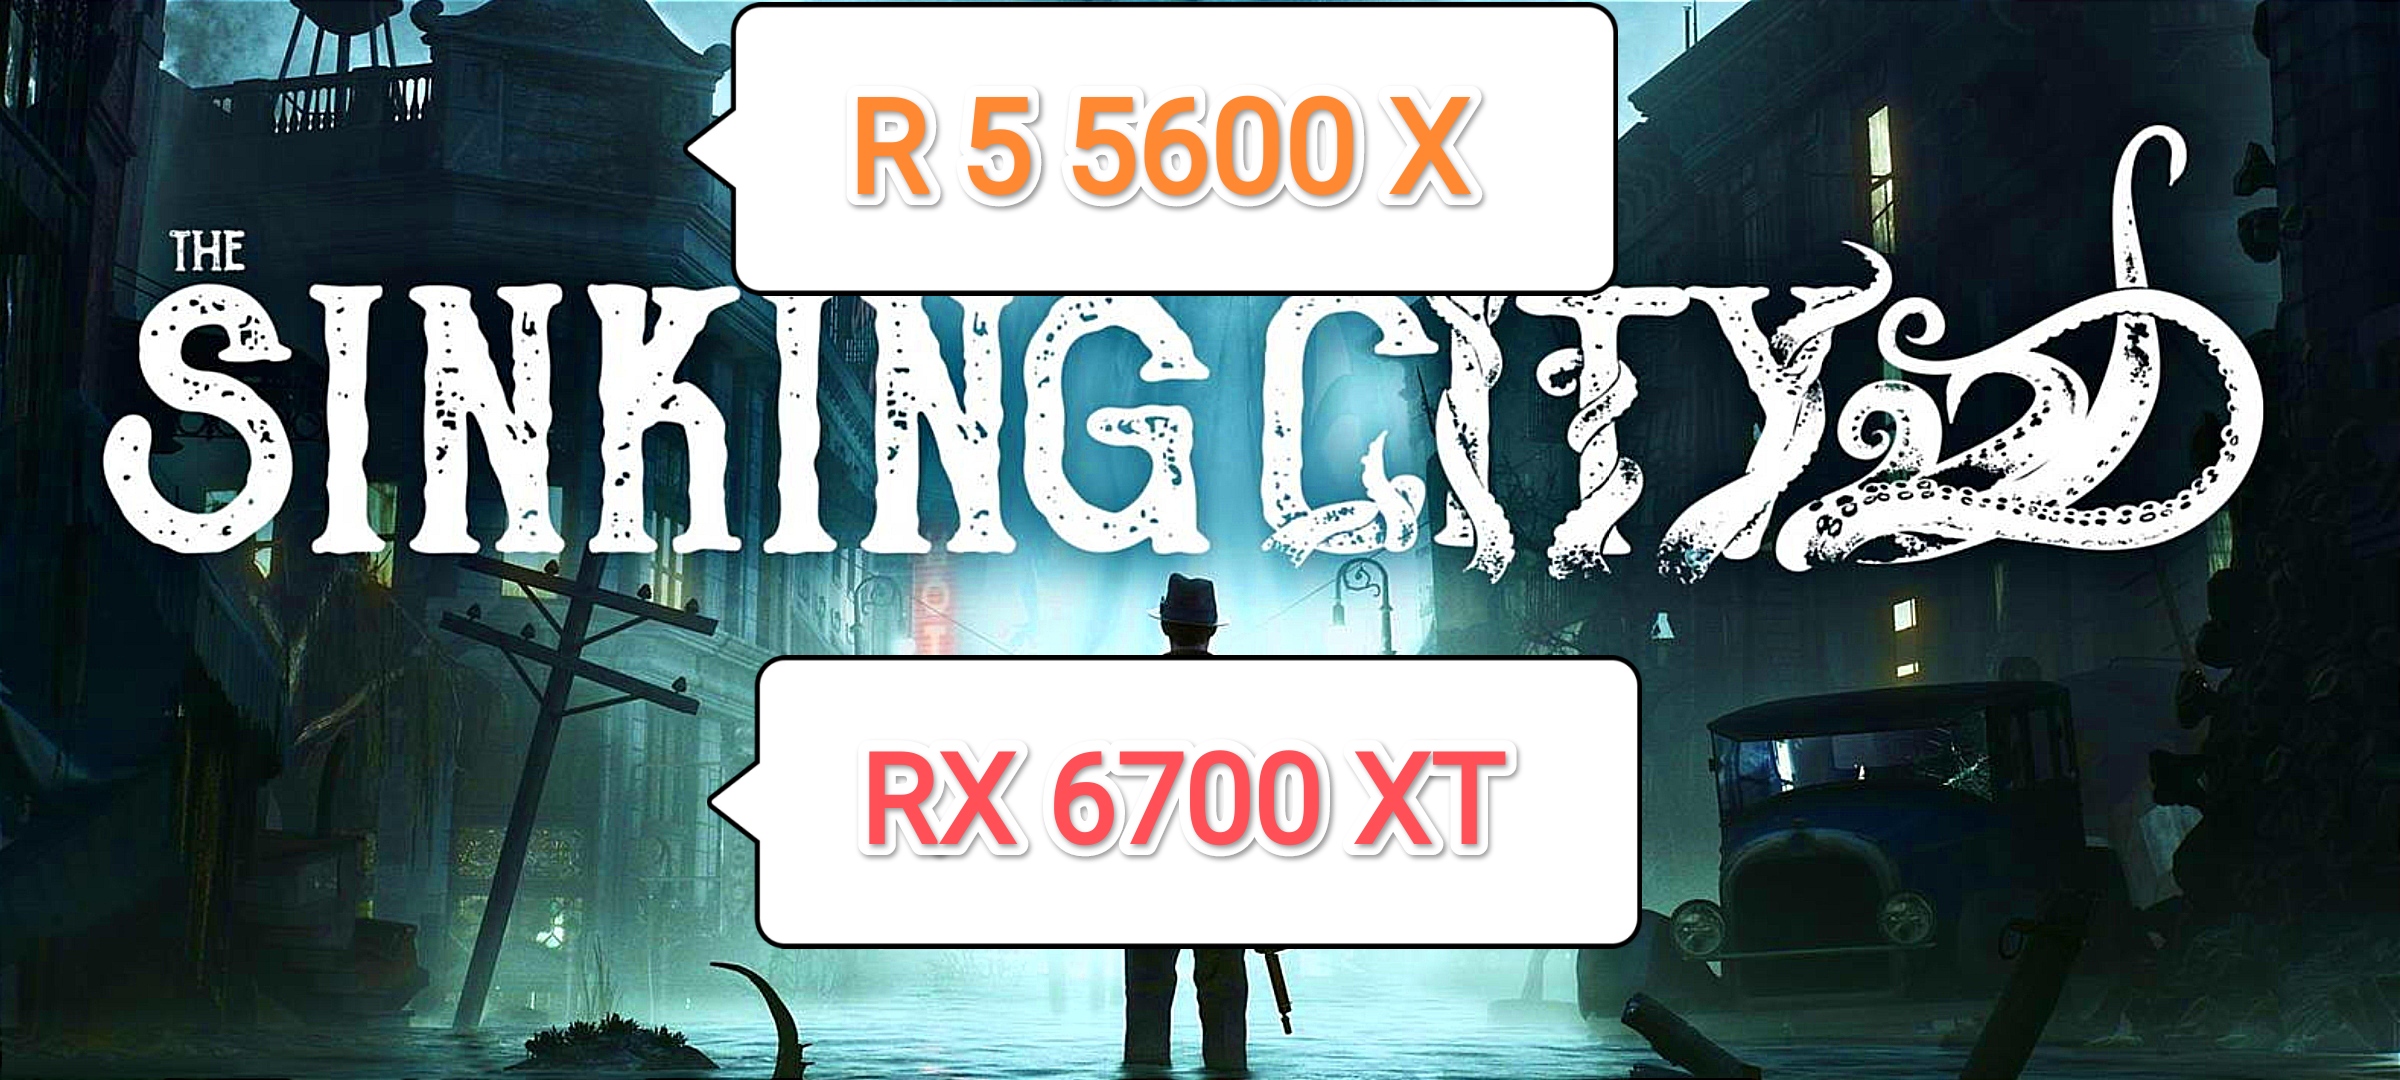 The Sinking City v.3757.2 (QHD) - тест игры на RX 6700 XT/R 5 5600 X